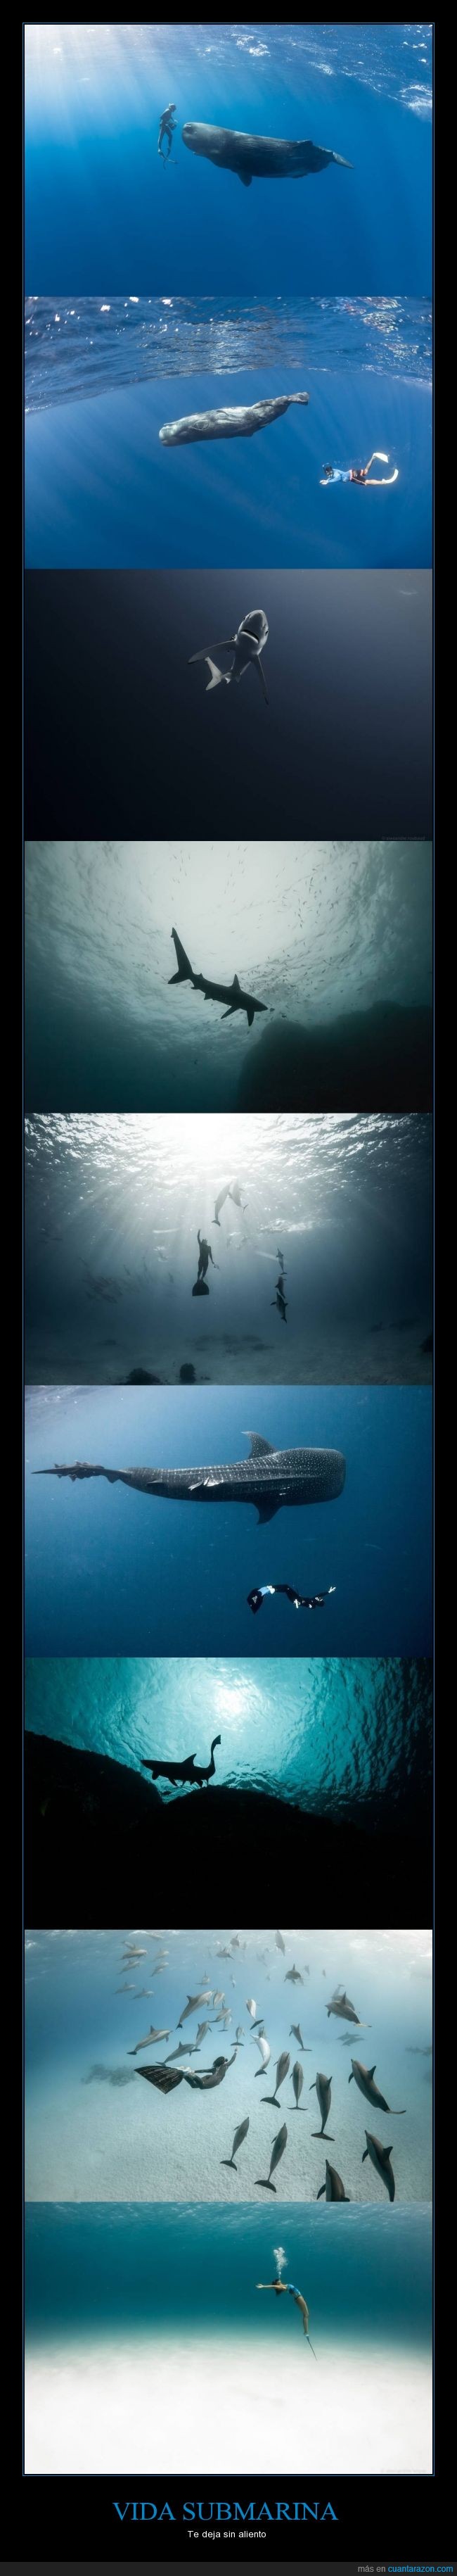 animales,belleza,delfines,mar,oxígeno,peces,precioso,submarino,tiburones,vida